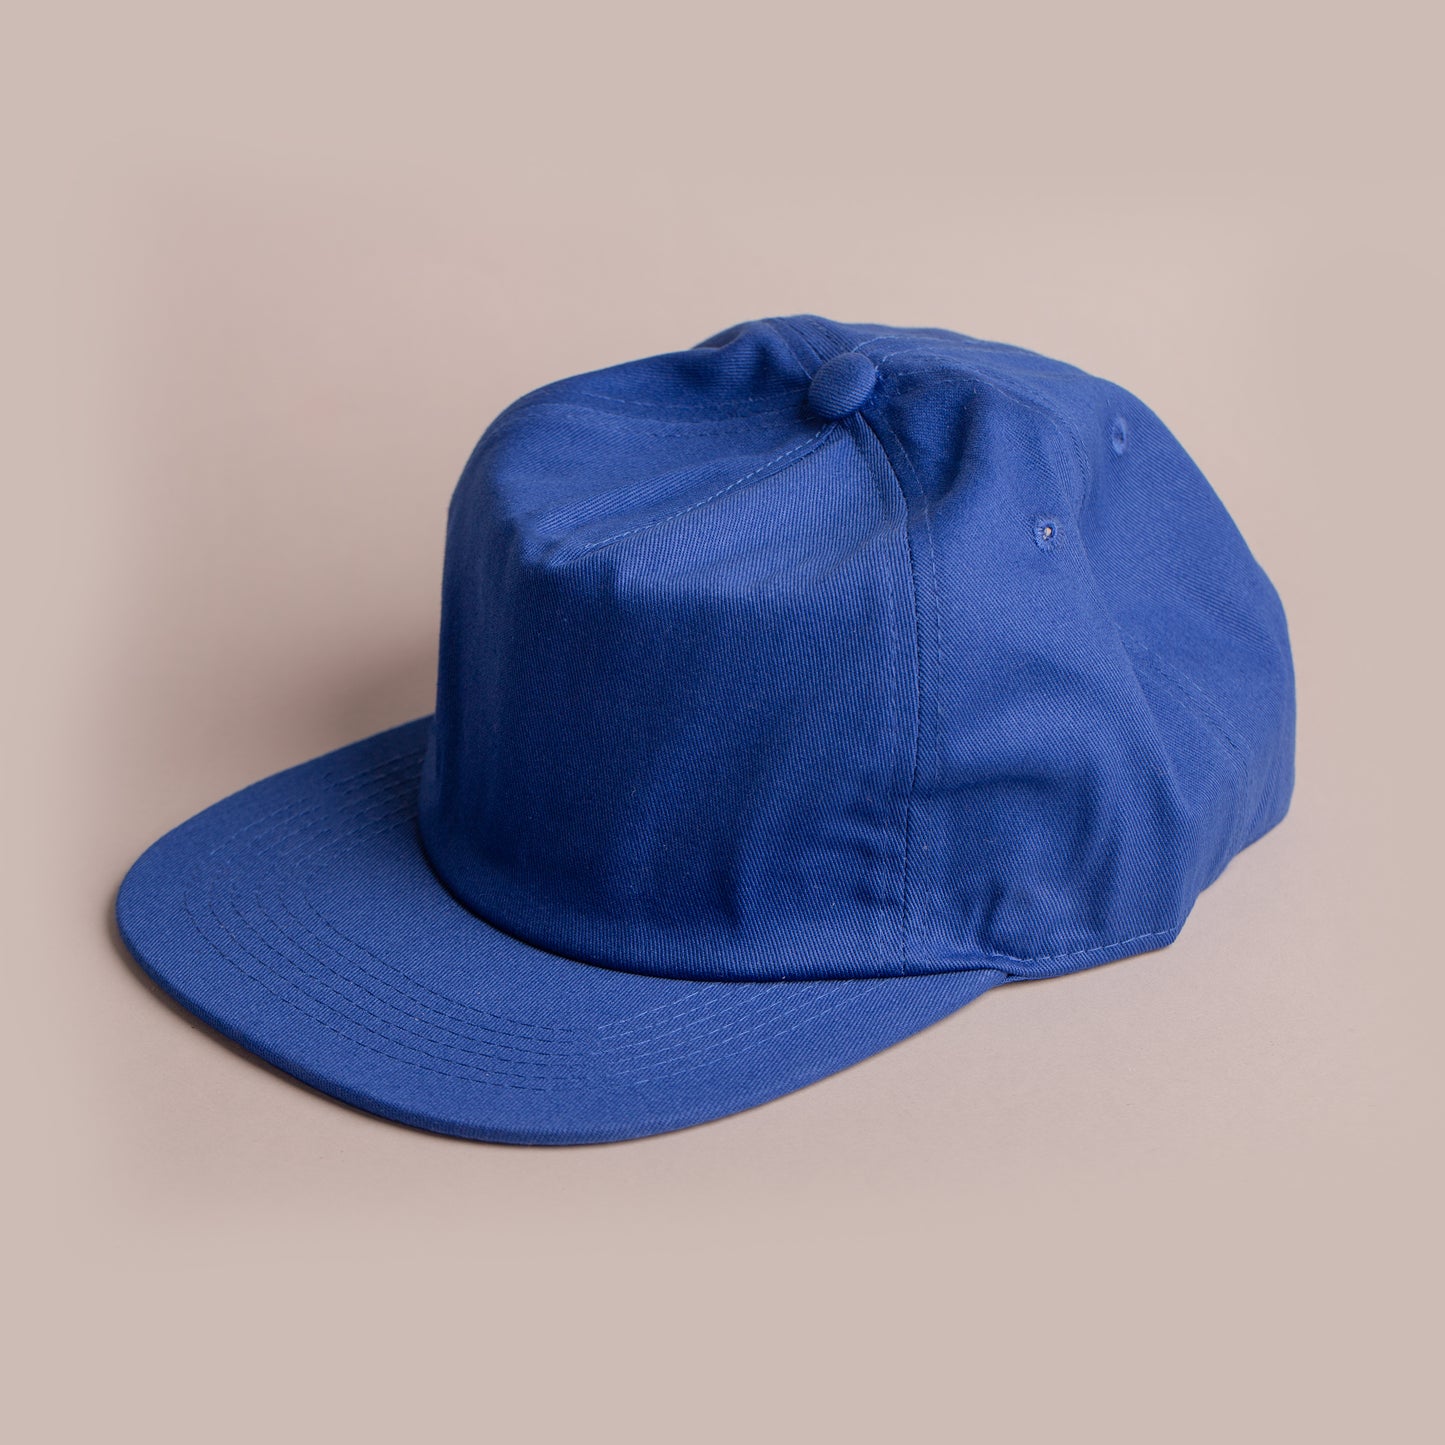 Blank Hat - Nissi 5 Panel Camper Cap - Royal Blue